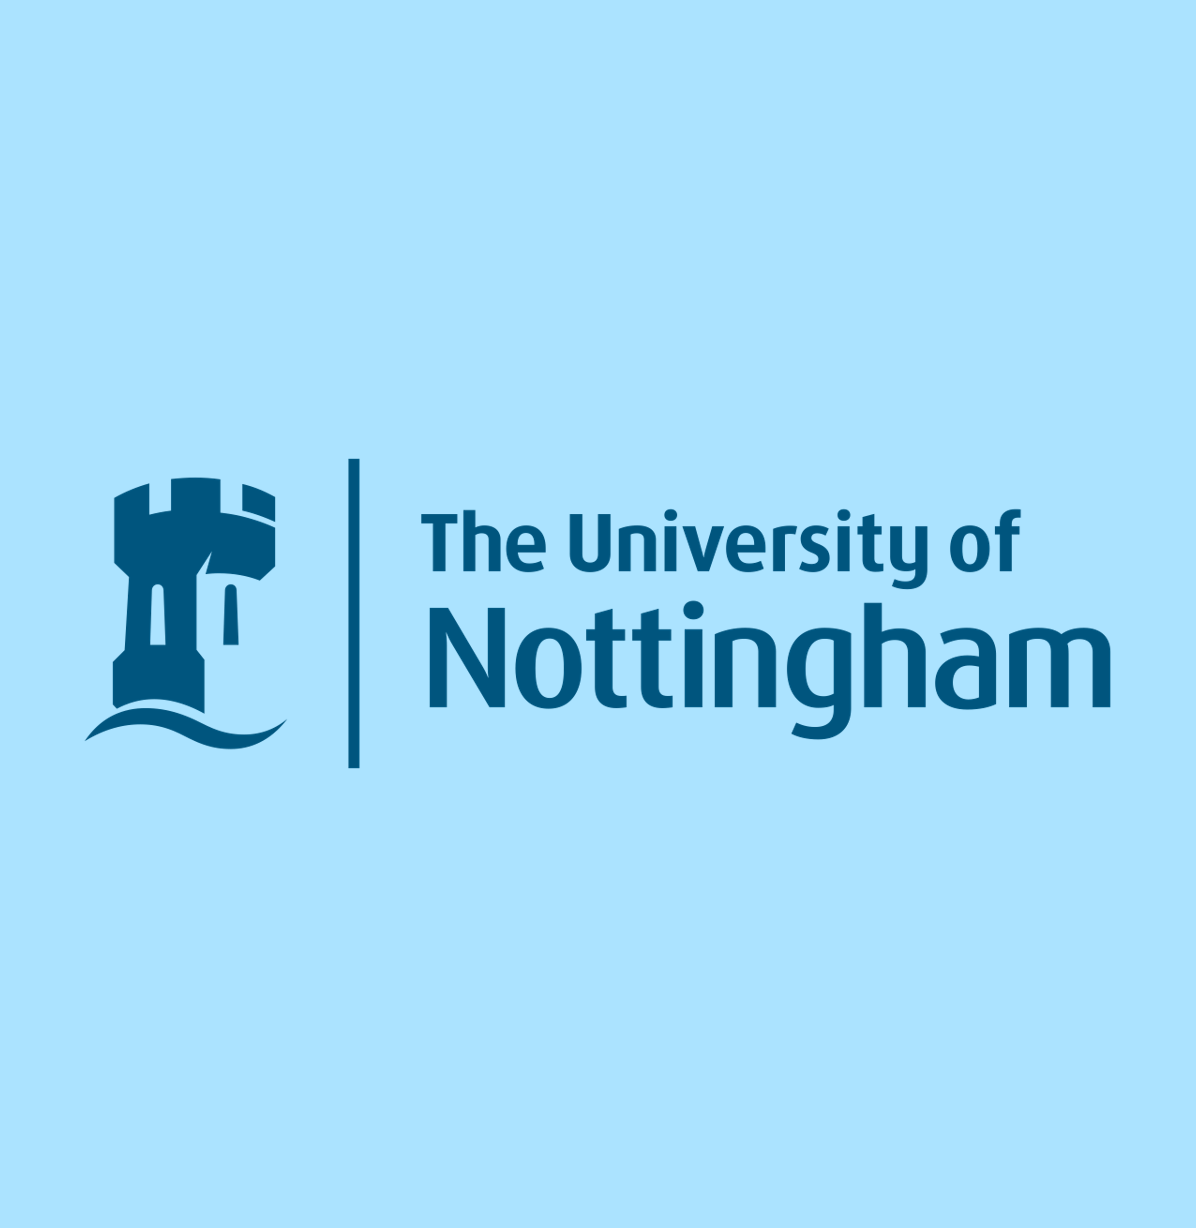 University of Nottingham – Plastic from shrimp shells?